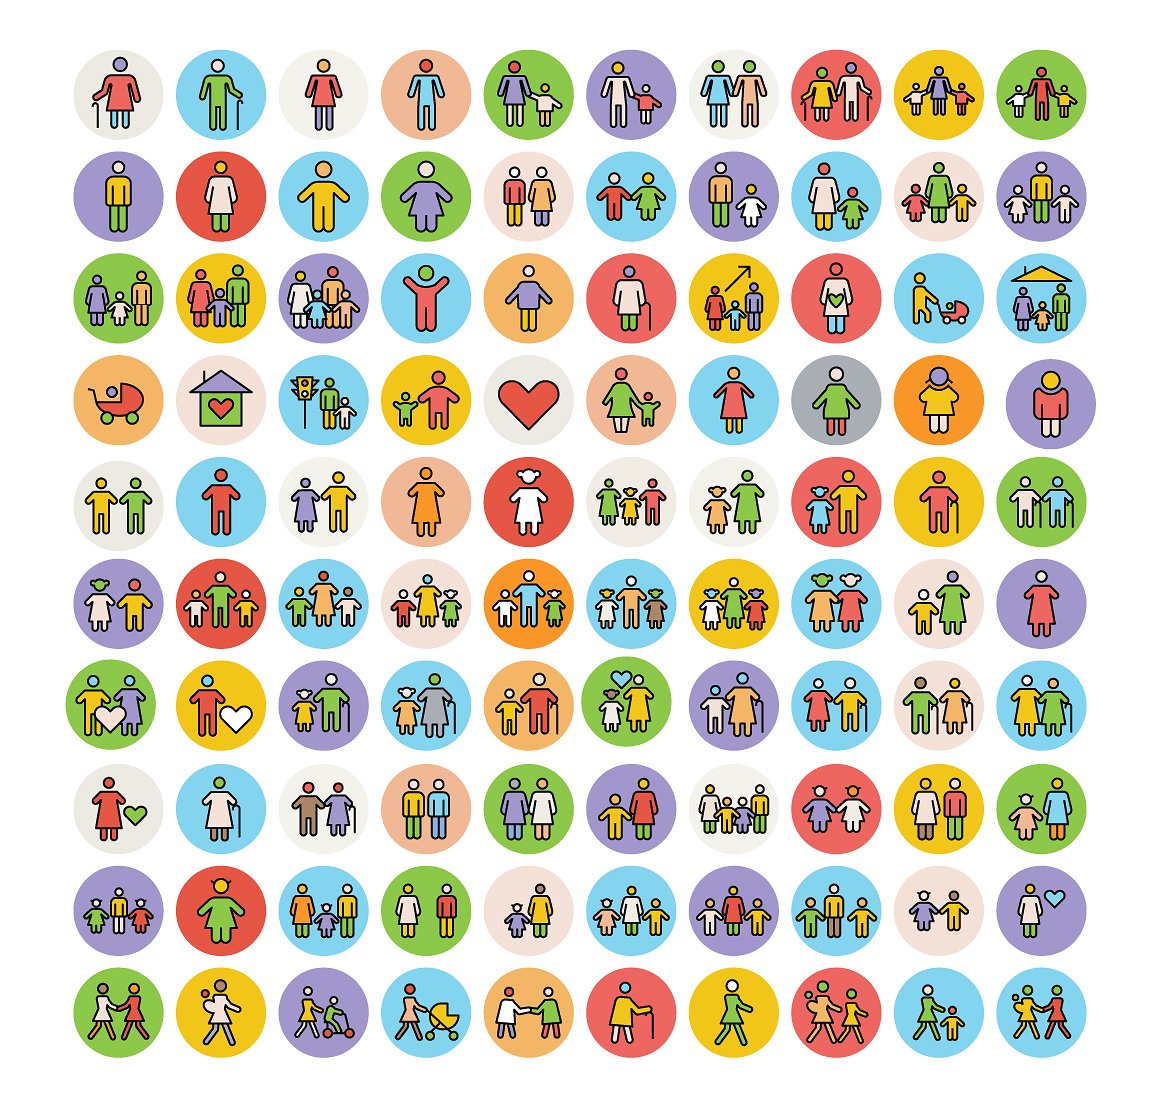 100个家庭图标集 100 Family Icons Set